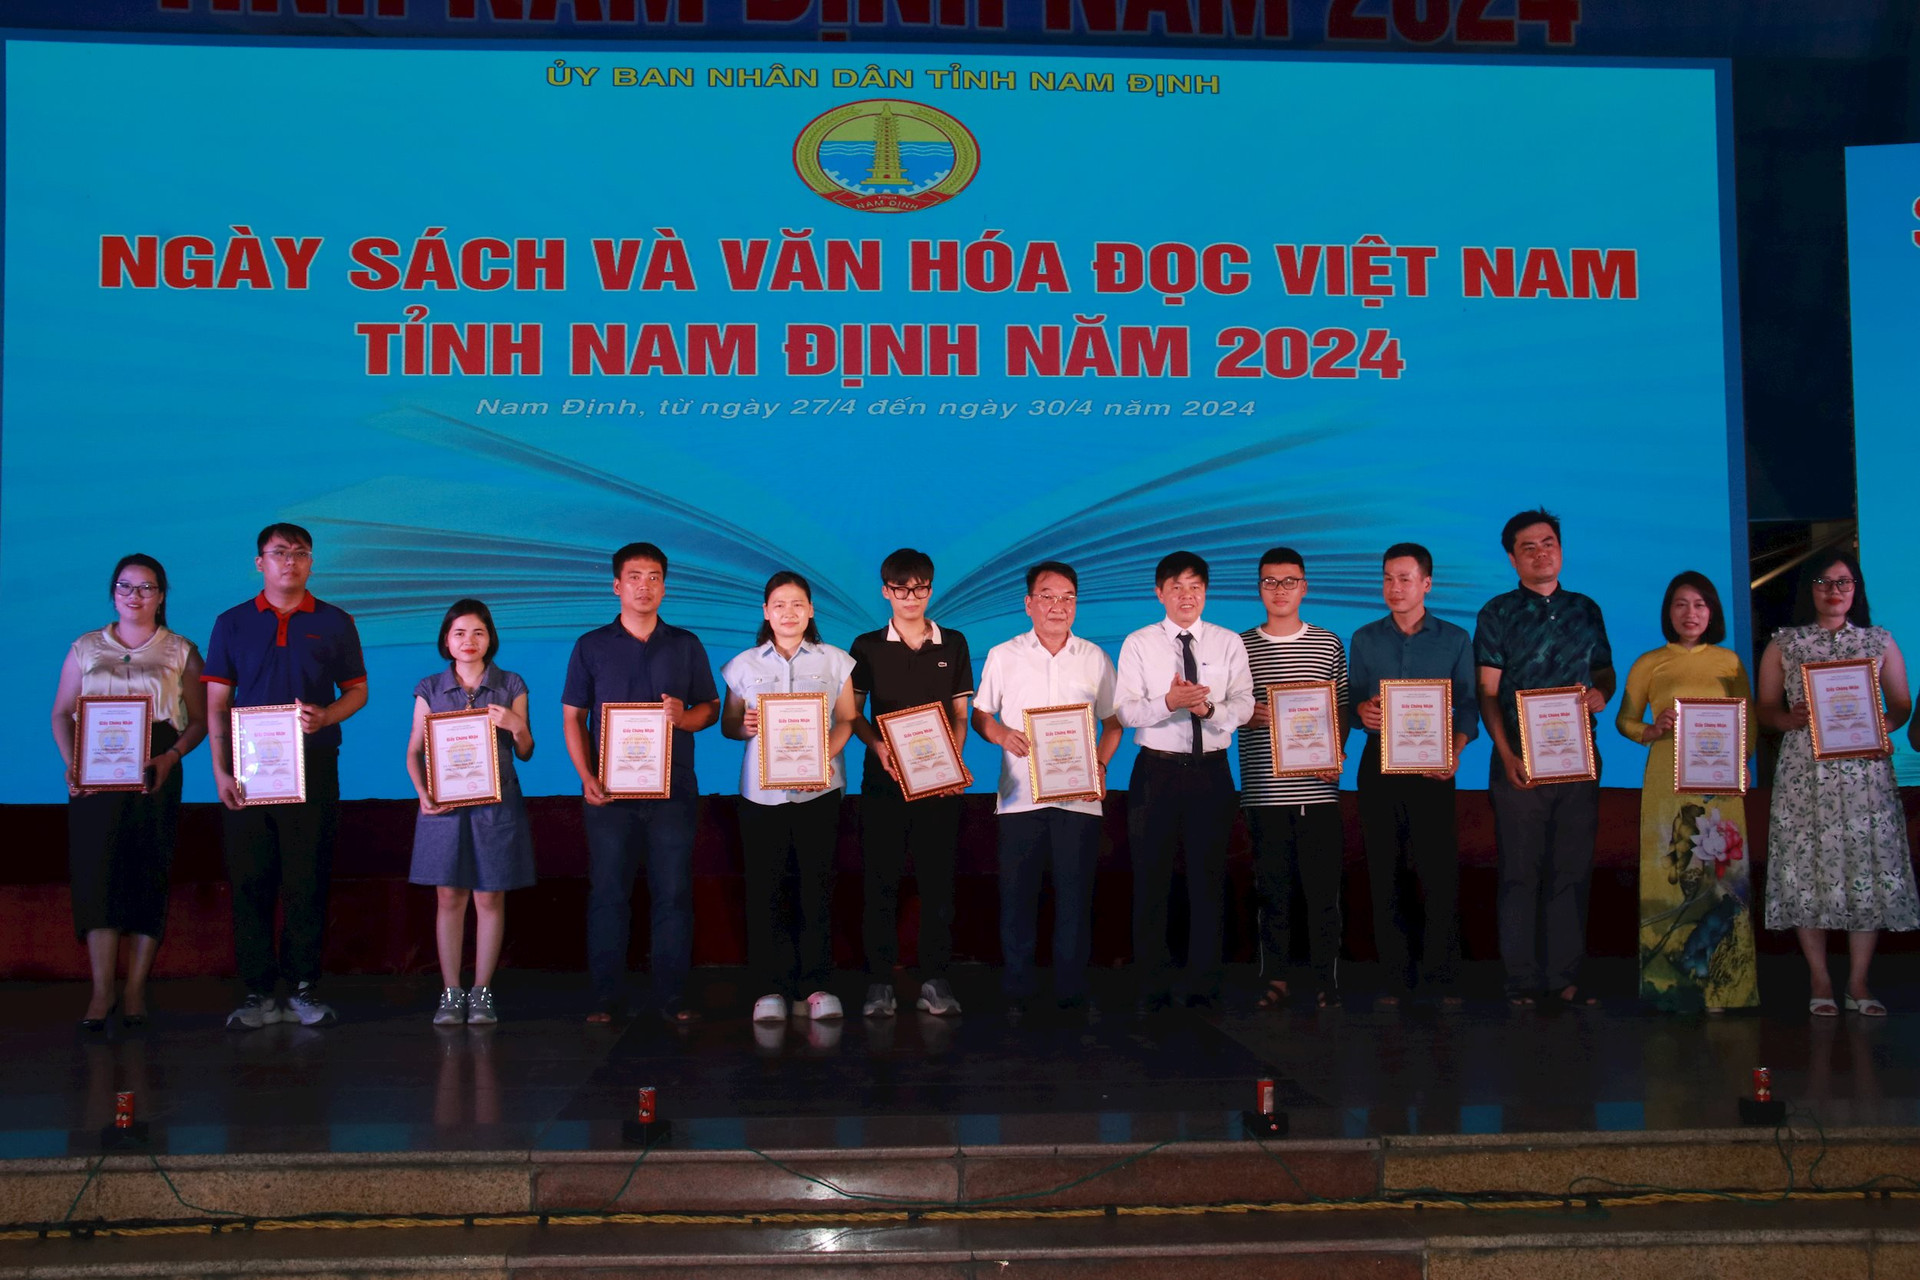 Các đơn vị thuộc ngành xuất bản tham gia trưng bày, giới thiệu, quả bá sách tại sự kiện được chính quyền tỉnh Nam Định tôn vinh.